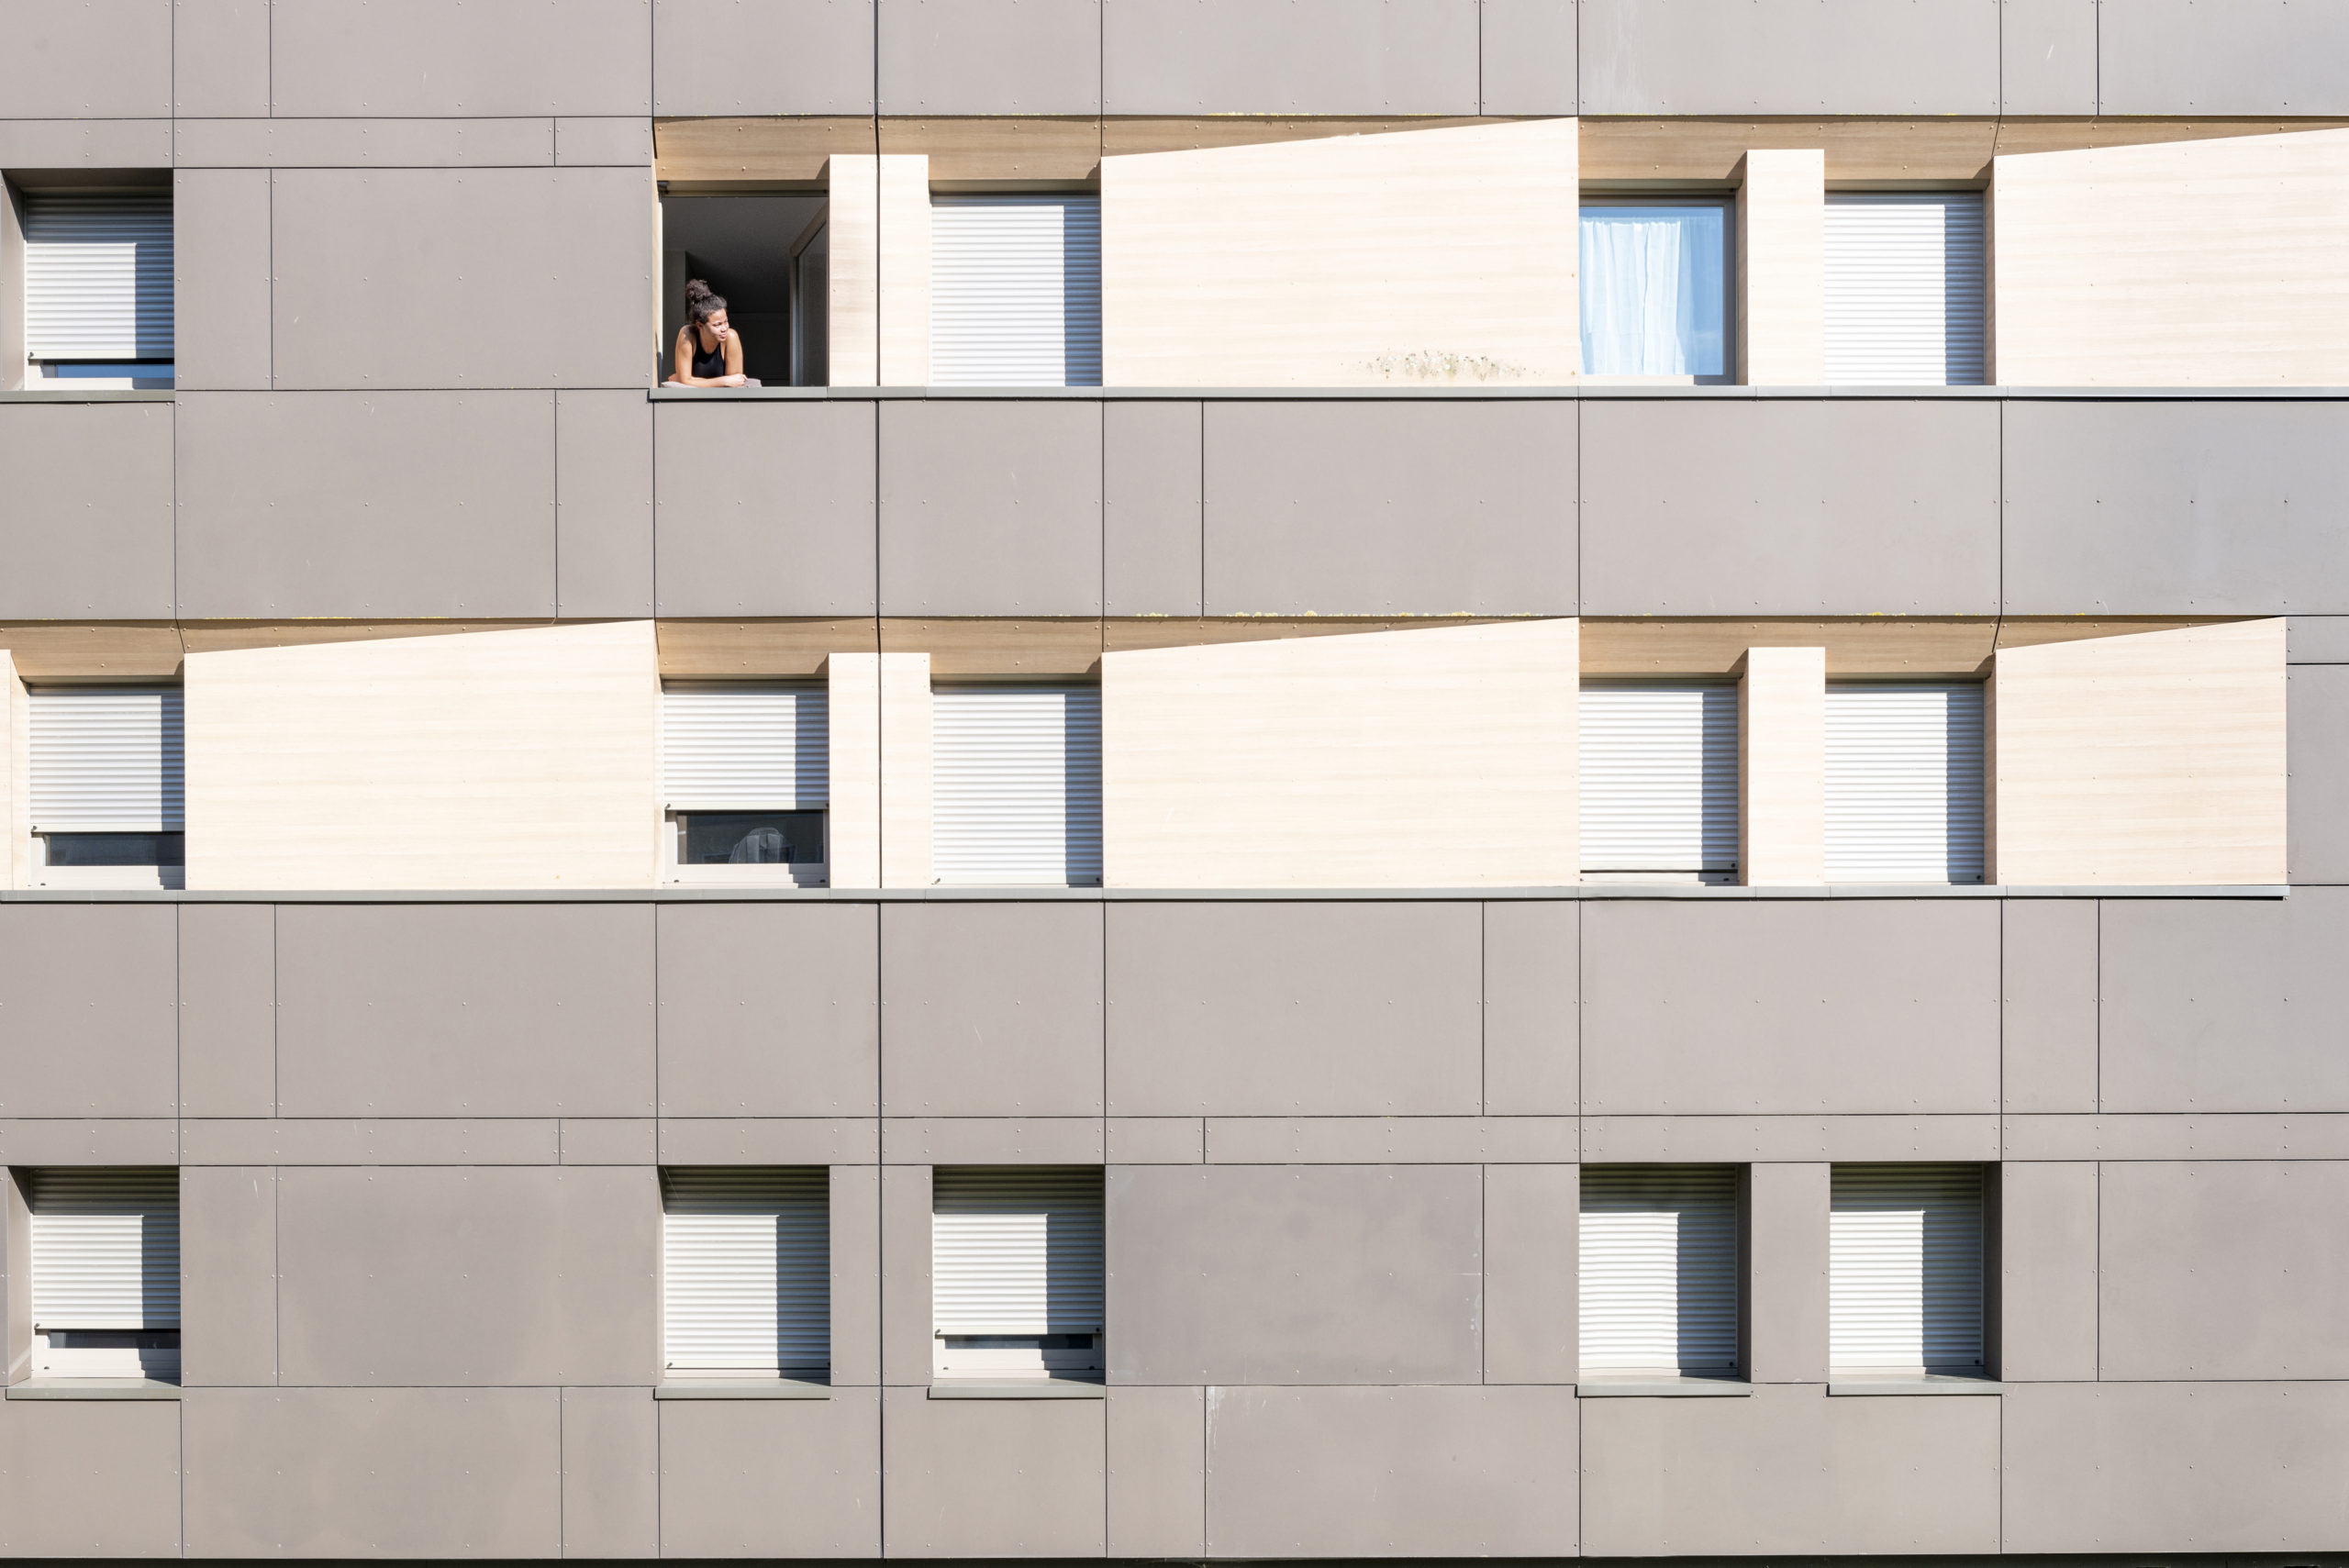 Una estudiante confinada en la residencia universitaria de Poitiers toma el aire desde su ventana. Muchos de los apartamentos parecen estar vacíos porque los estudiantes han vuelto con sus familias.